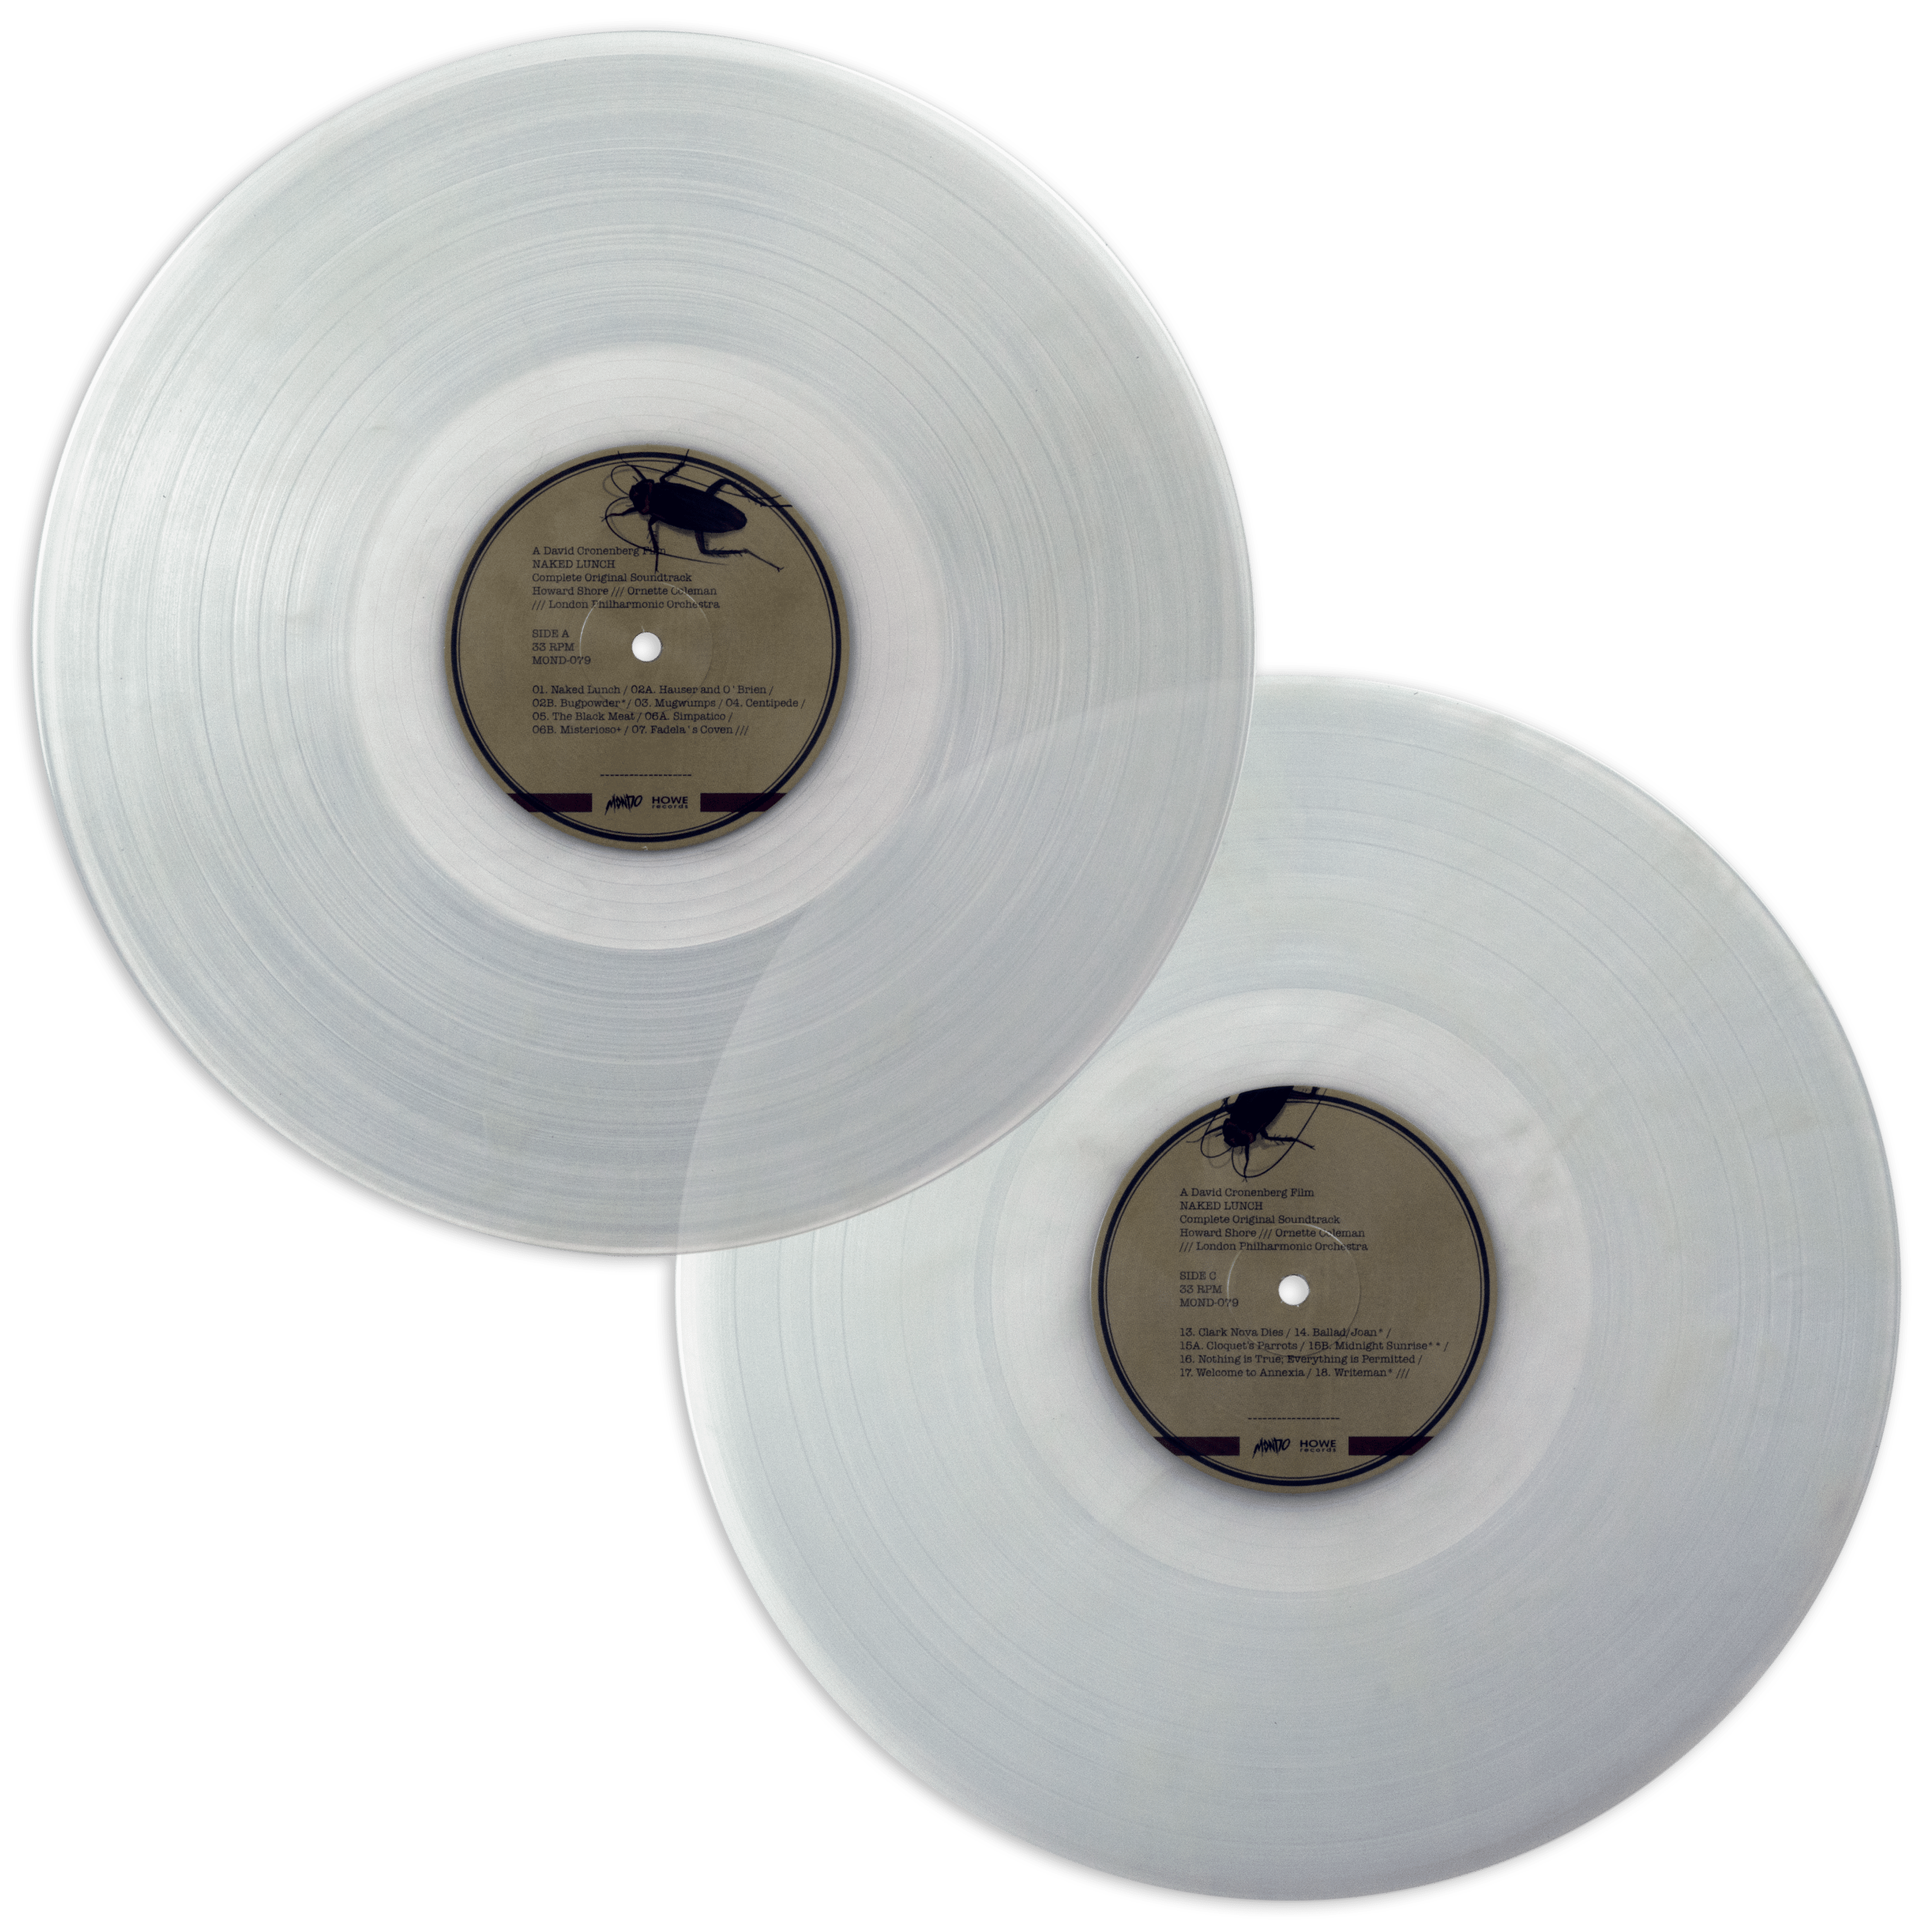 Dead Ringers – Original Motion Picture Soundtrack LP